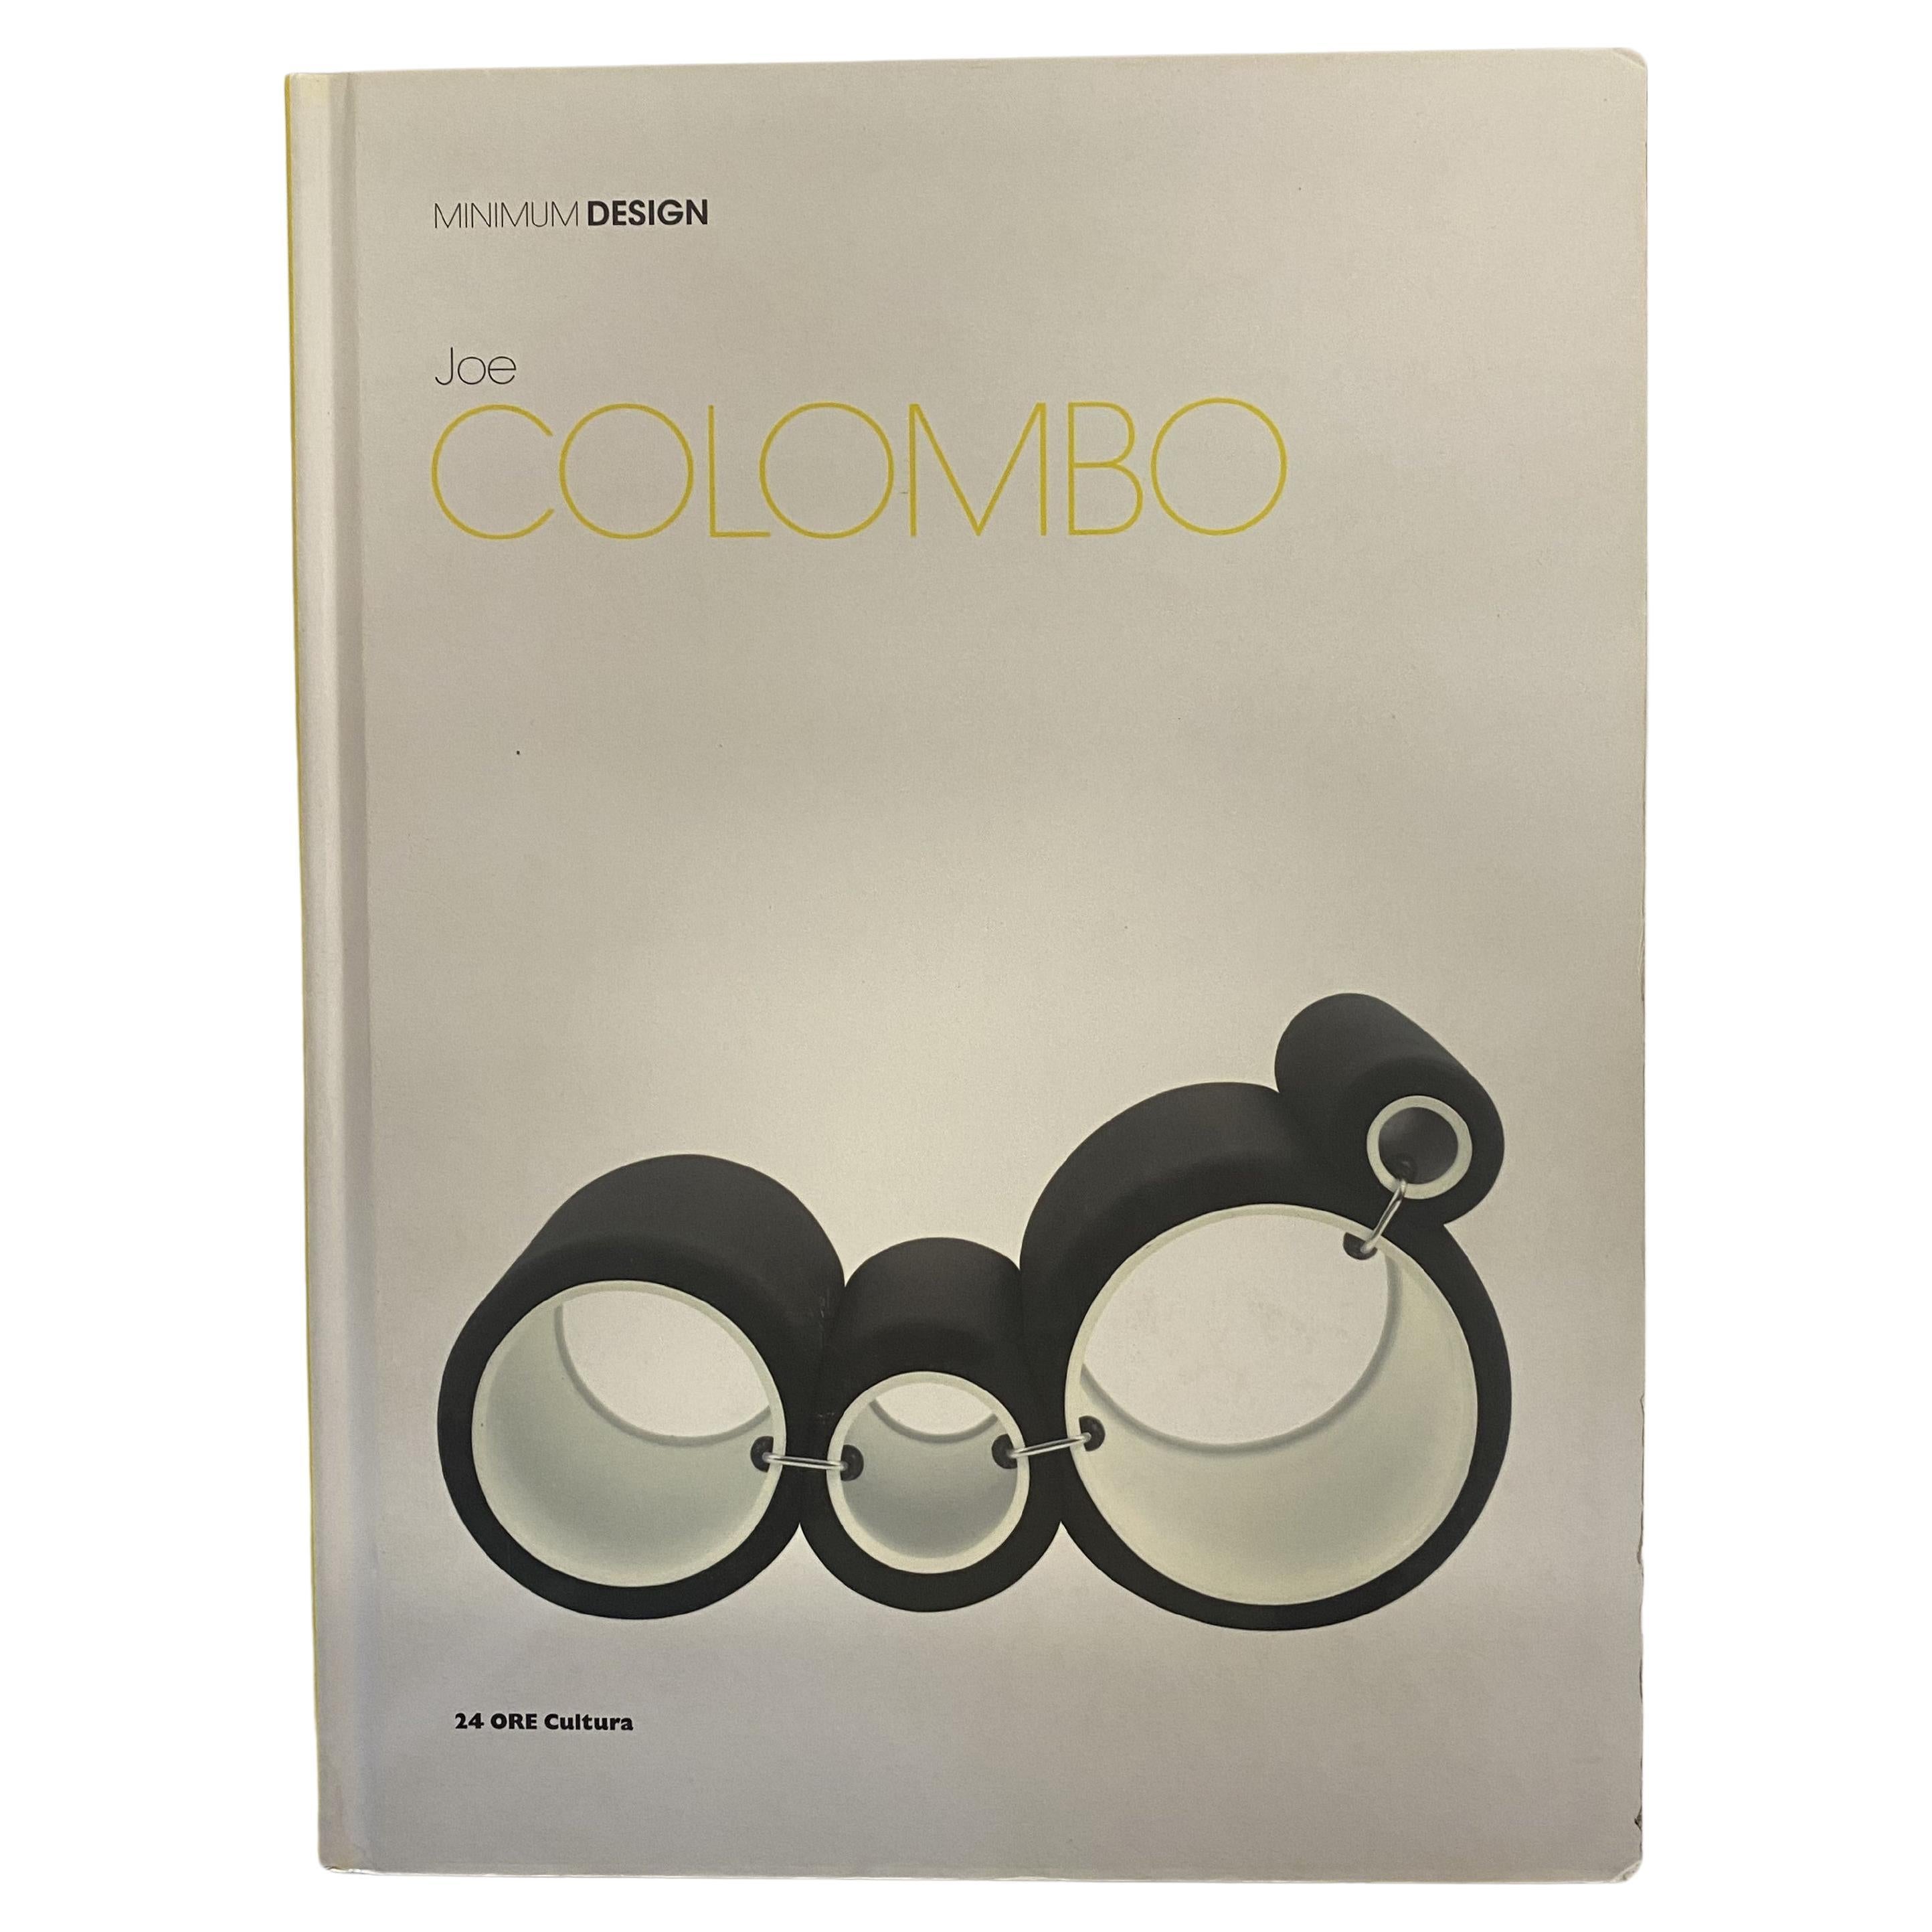 Joe Colombo: Minimum Design by Vittorio Fagone and Ignazia Favata (Book) For Sale